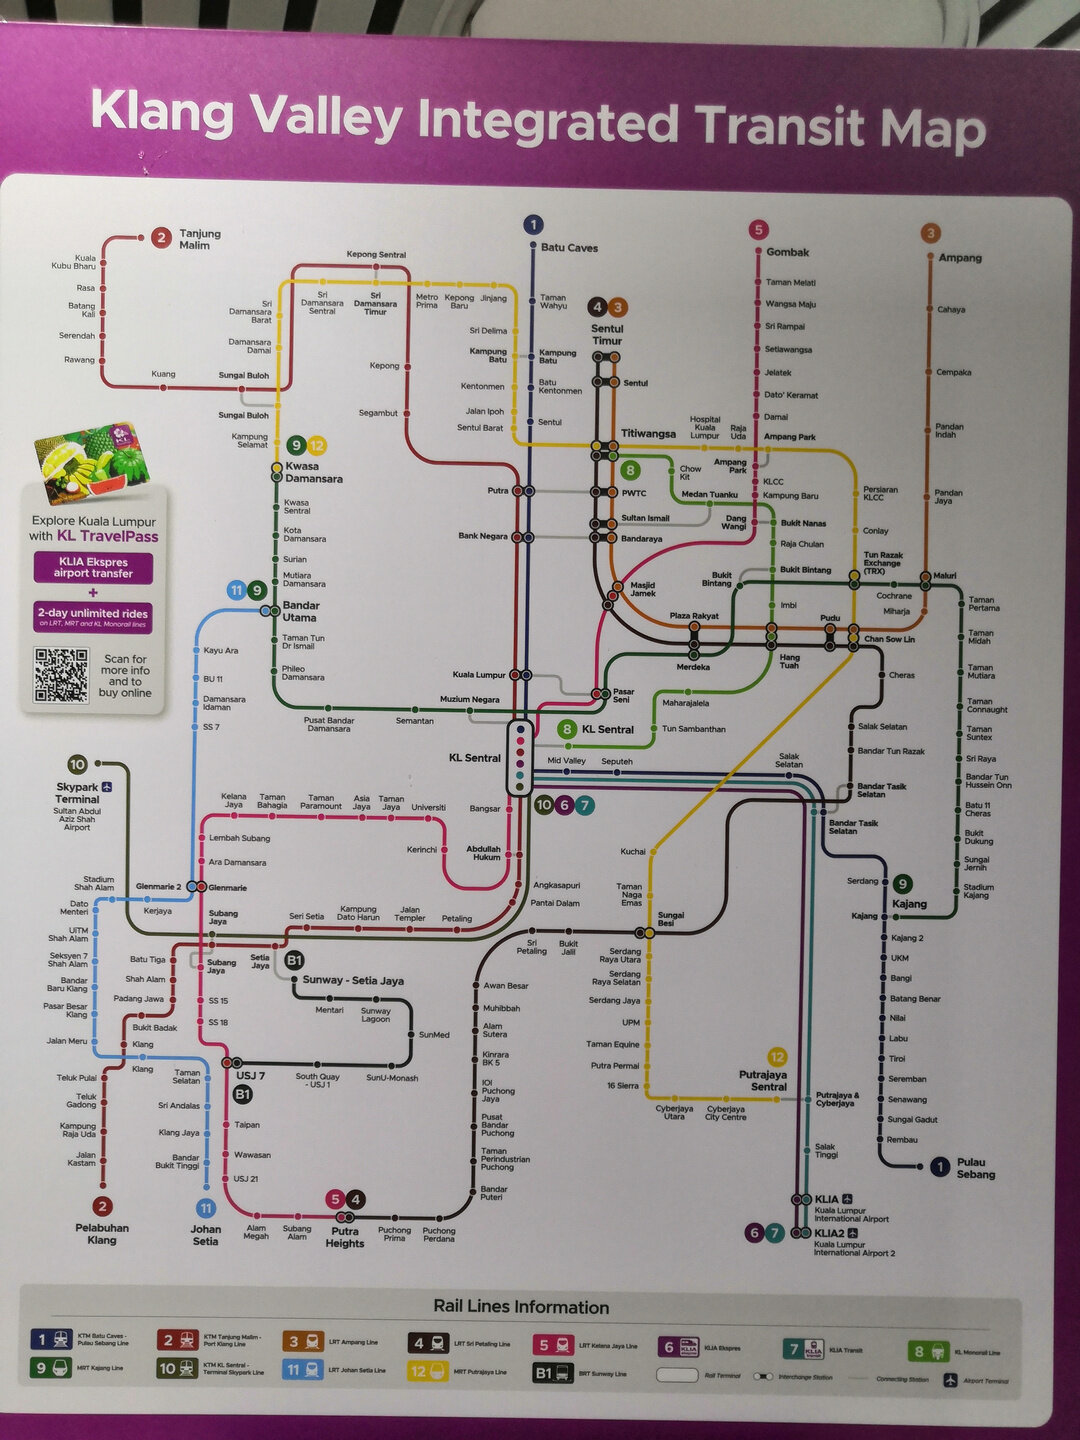 <span lang="ru">Схема метро в Куала-Лумпур</span><span lang="en">Metro map in Kuala Lumpur</span>